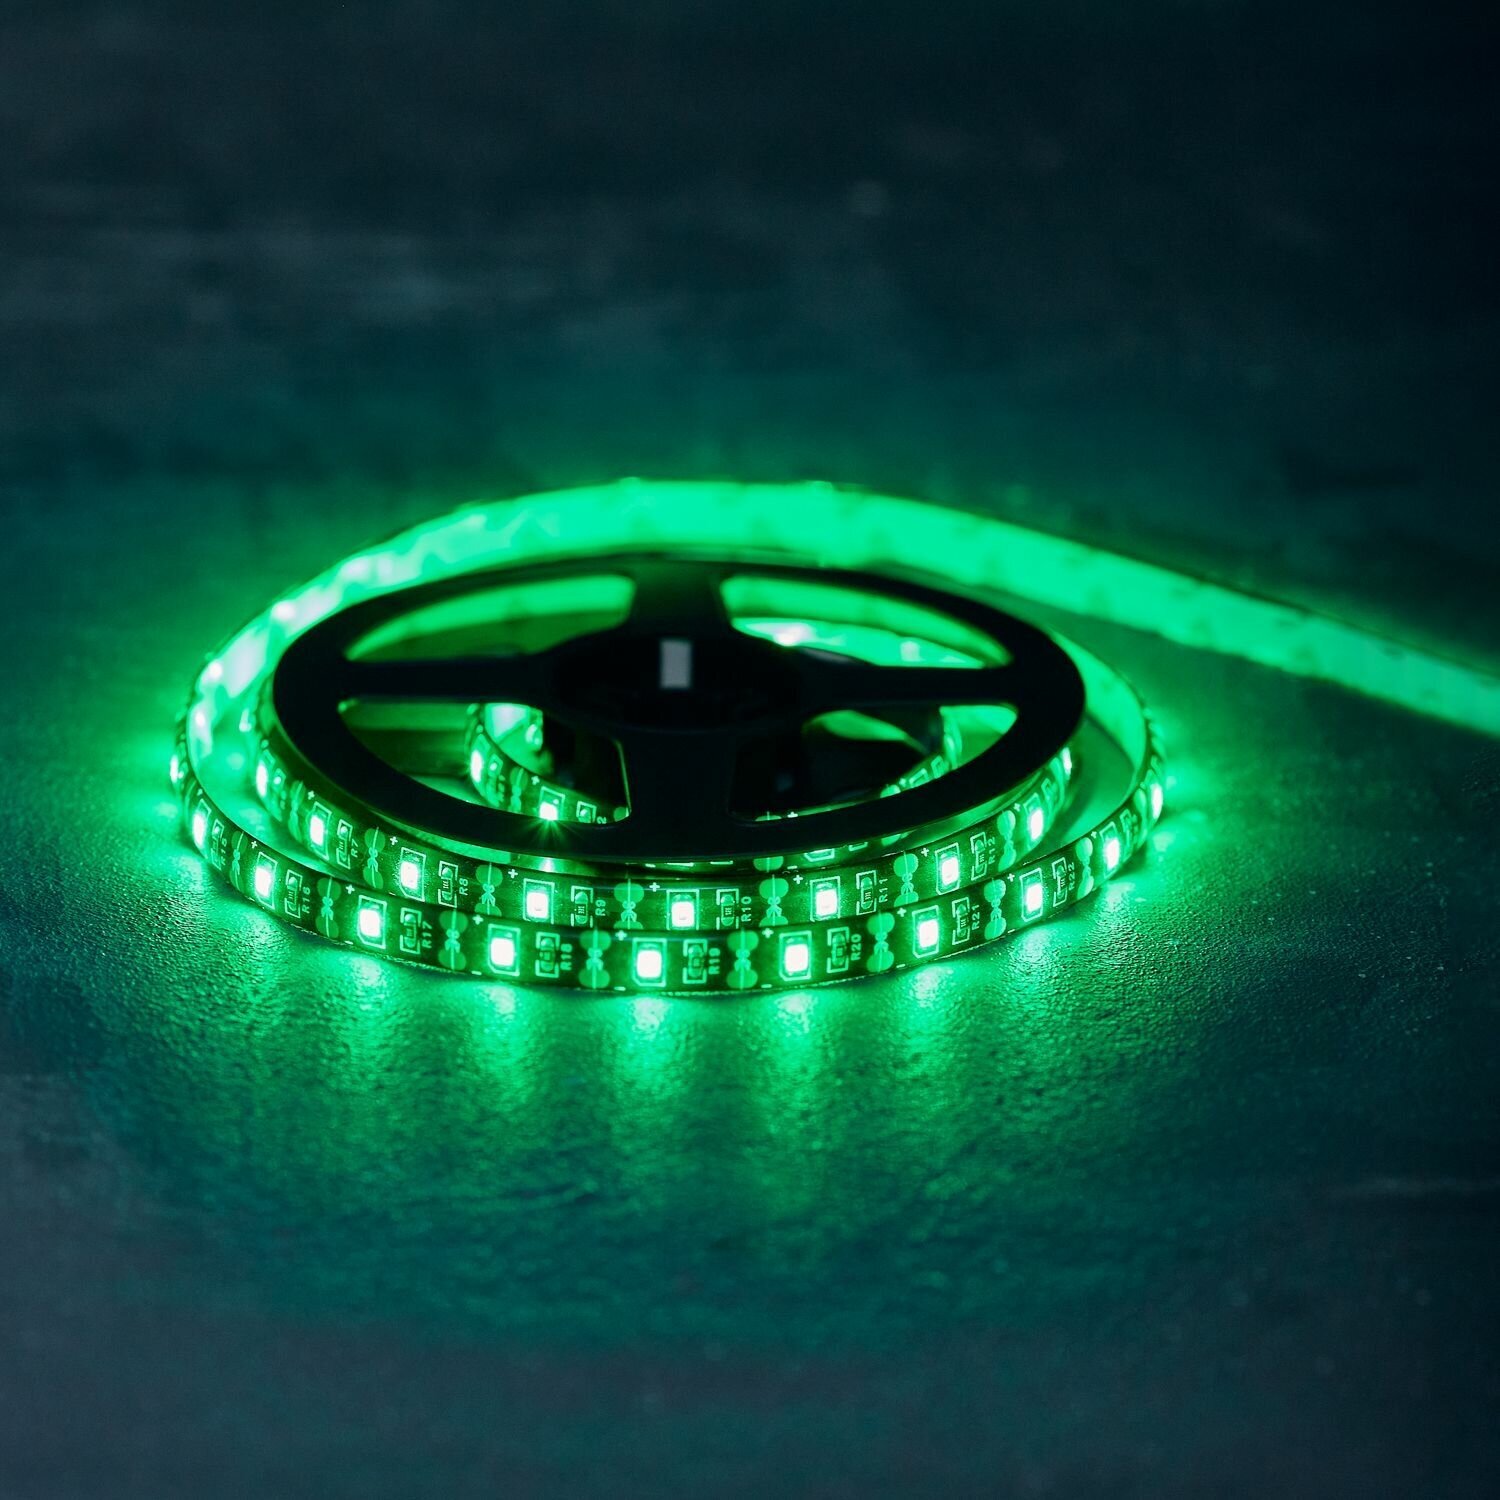 Гибкая влагозащищенная светодиодная USB лента Lamper с зеленым свечением и клеевым слоем, 60 LED/м, 5 В, 1 м